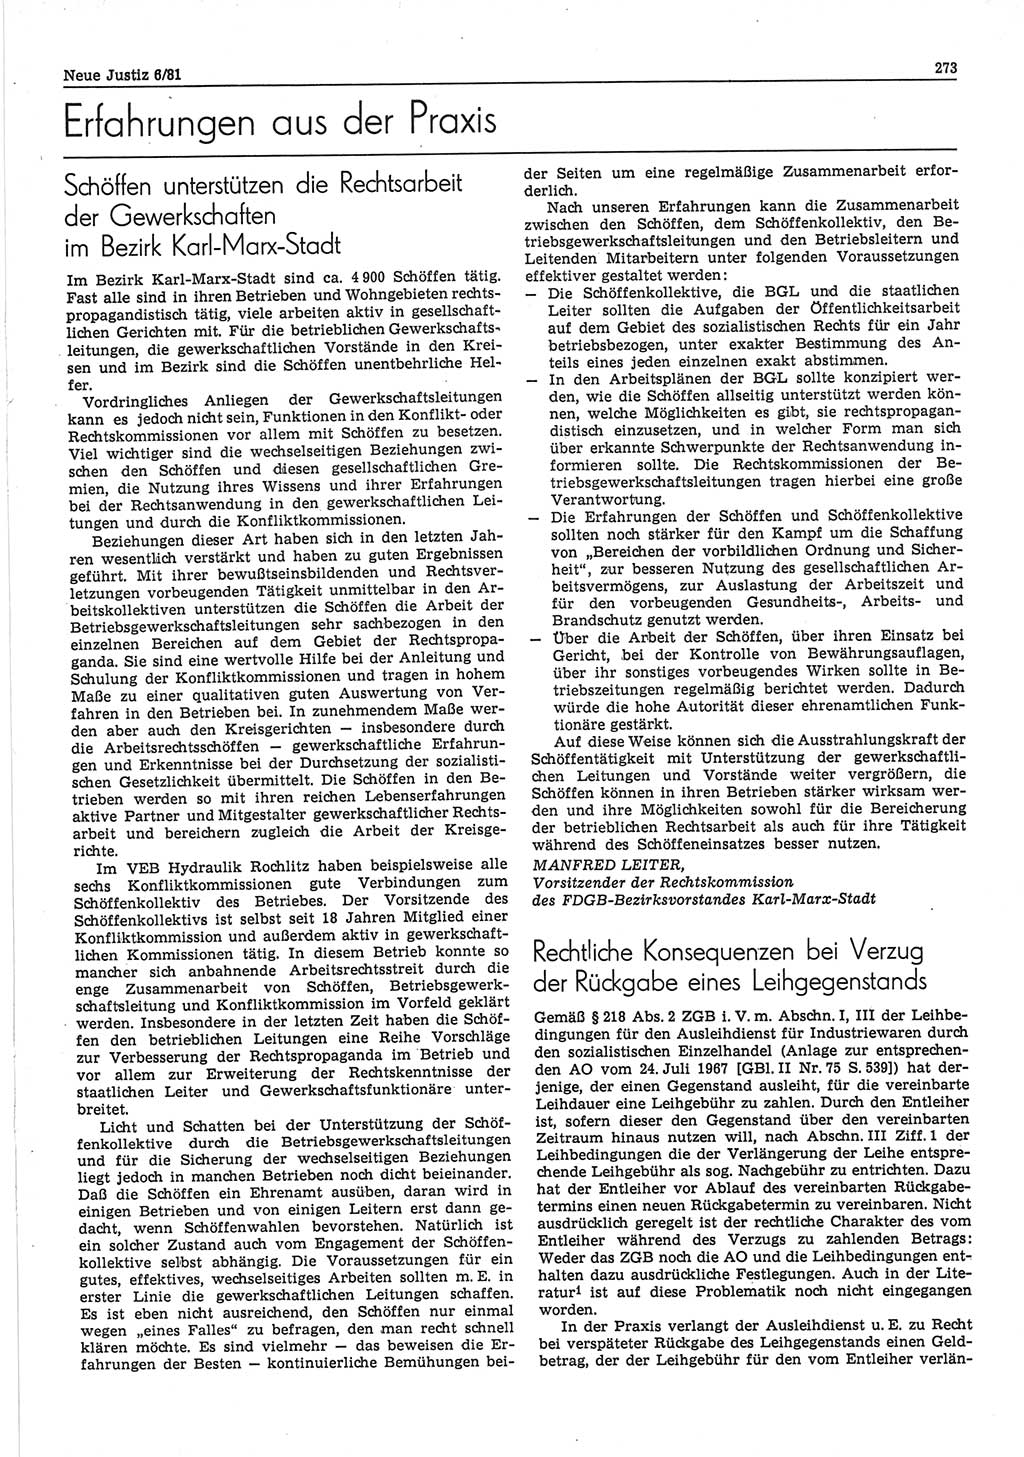 Neue Justiz (NJ), Zeitschrift für sozialistisches Recht und Gesetzlichkeit [Deutsche Demokratische Republik (DDR)], 35. Jahrgang 1981, Seite 273 (NJ DDR 1981, S. 273)